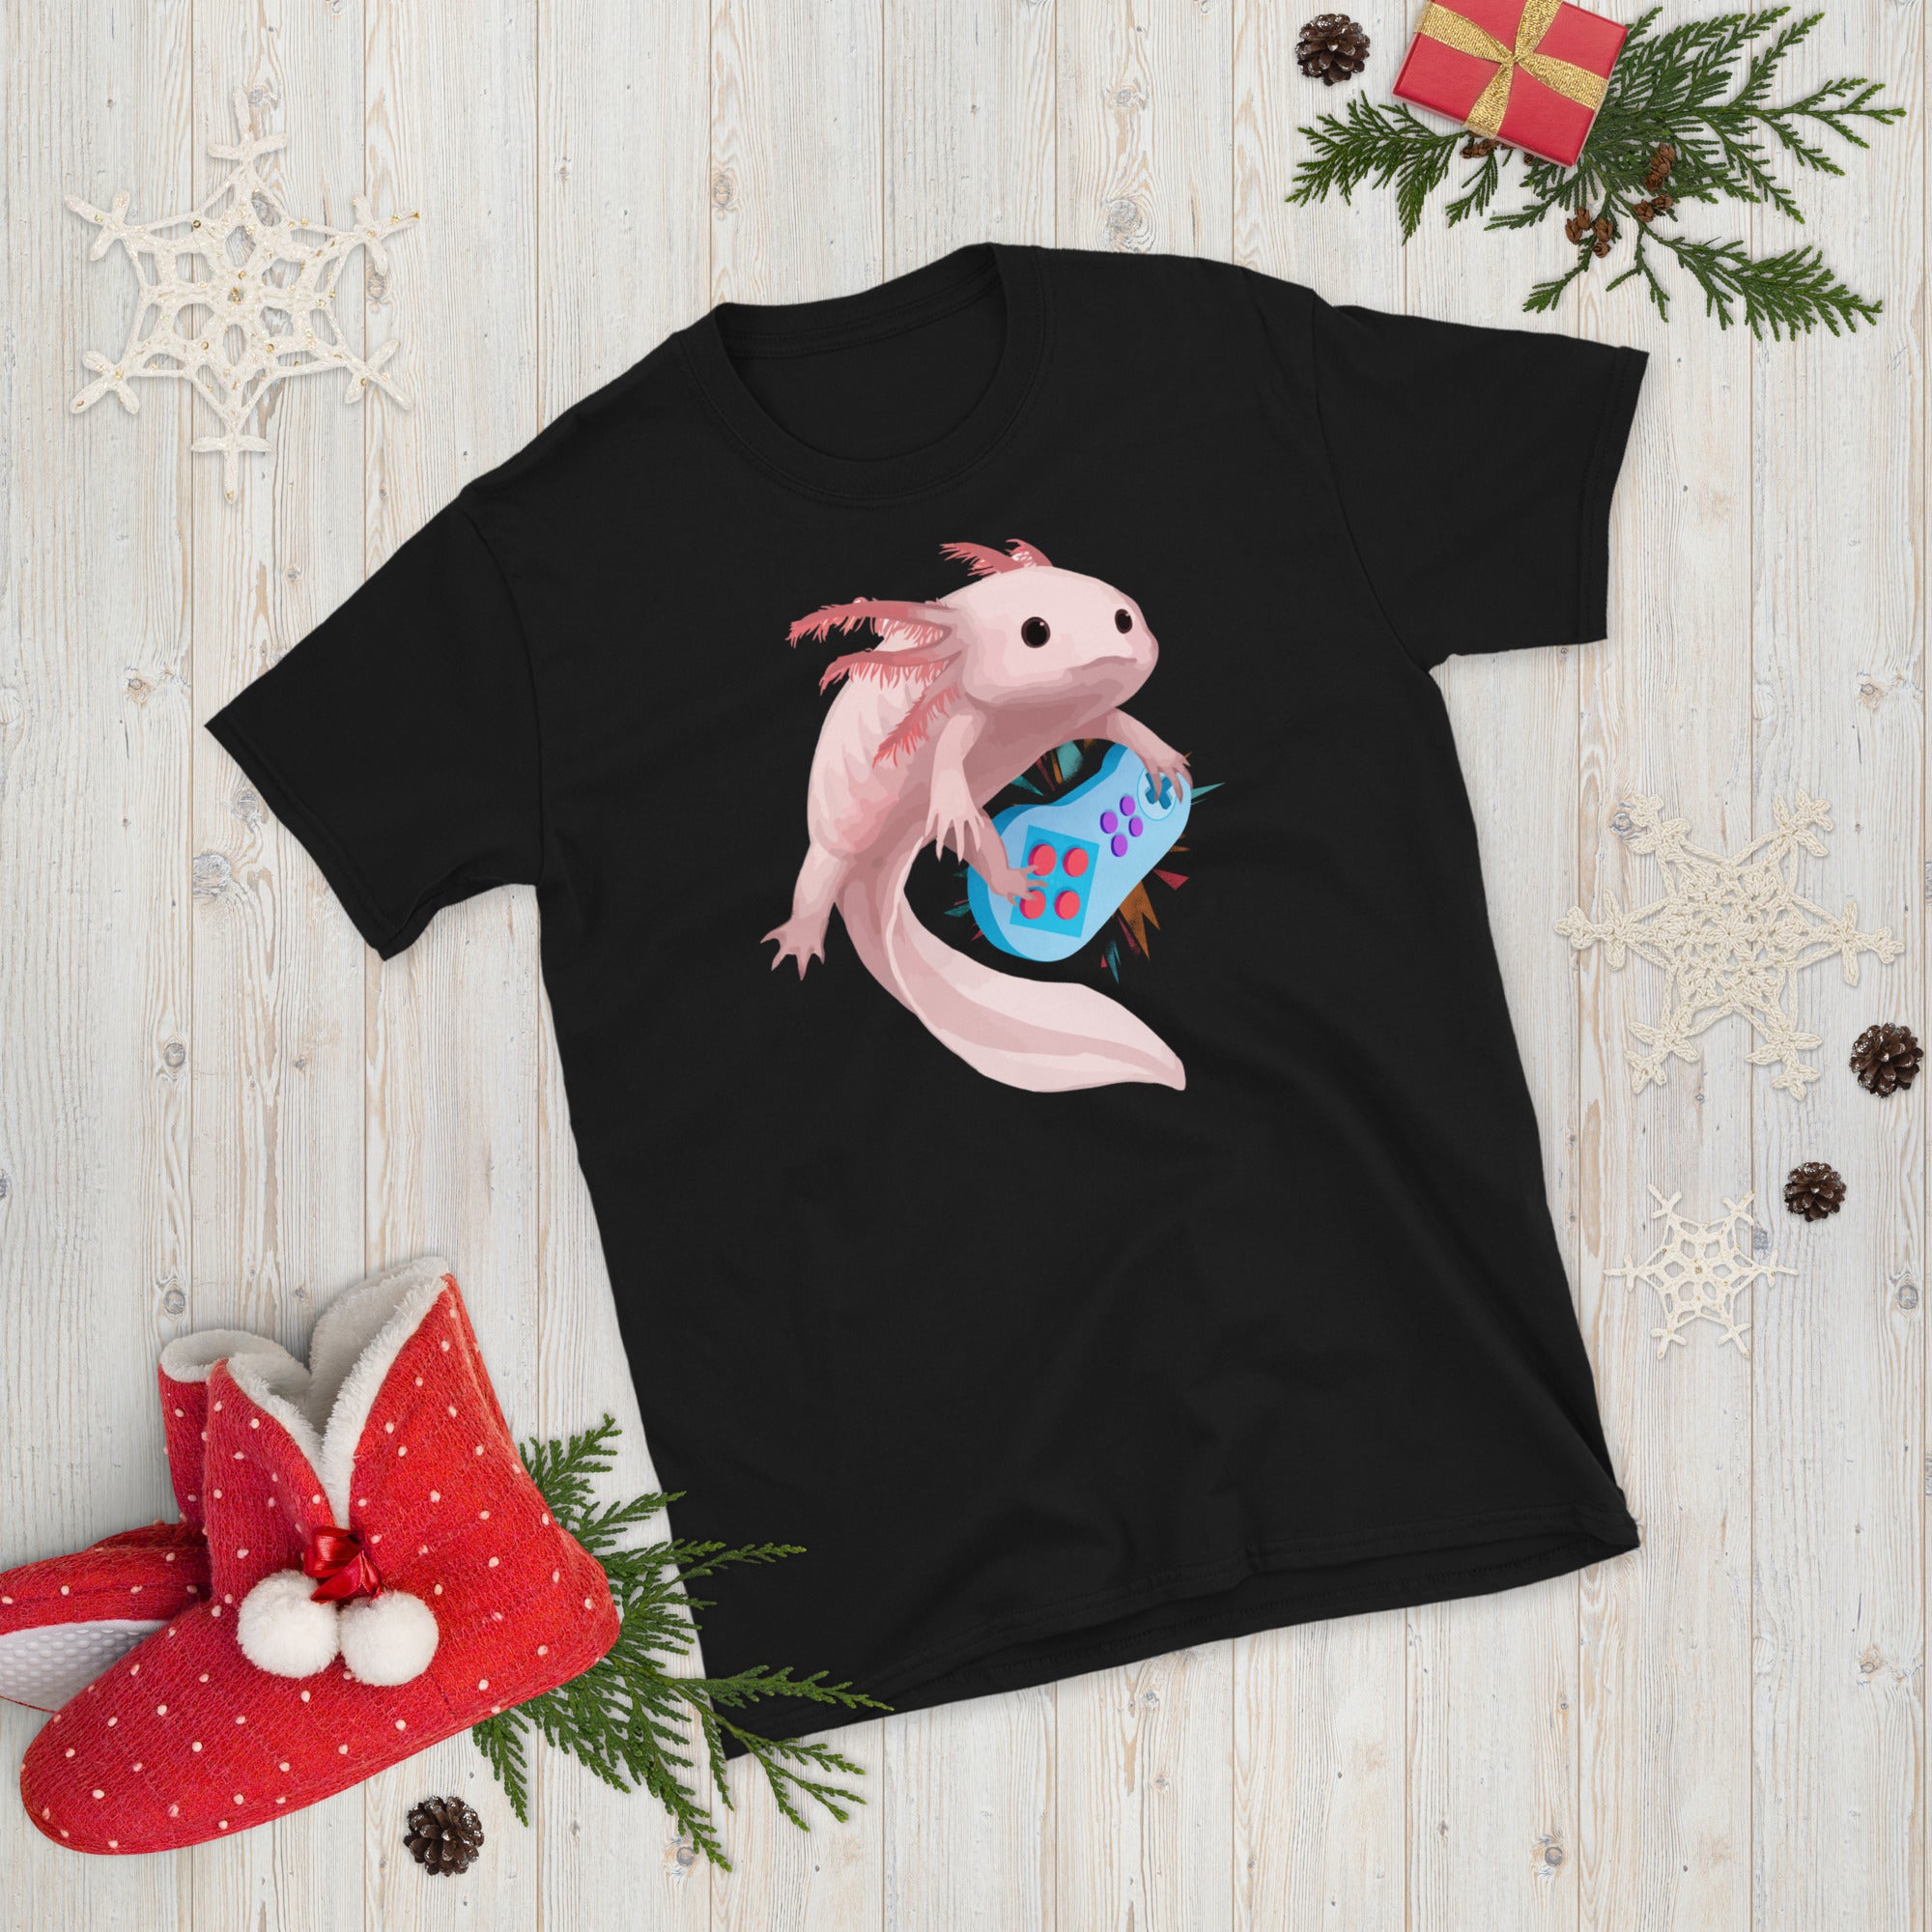 Axolotl Gamer Shirt, Funny Axolotl Shirt, Mexican Salamander Shirt, Gamesolotl, Axolotl Gaming, Funny Gaming T Shirt, Cute Axolotl T Shirt